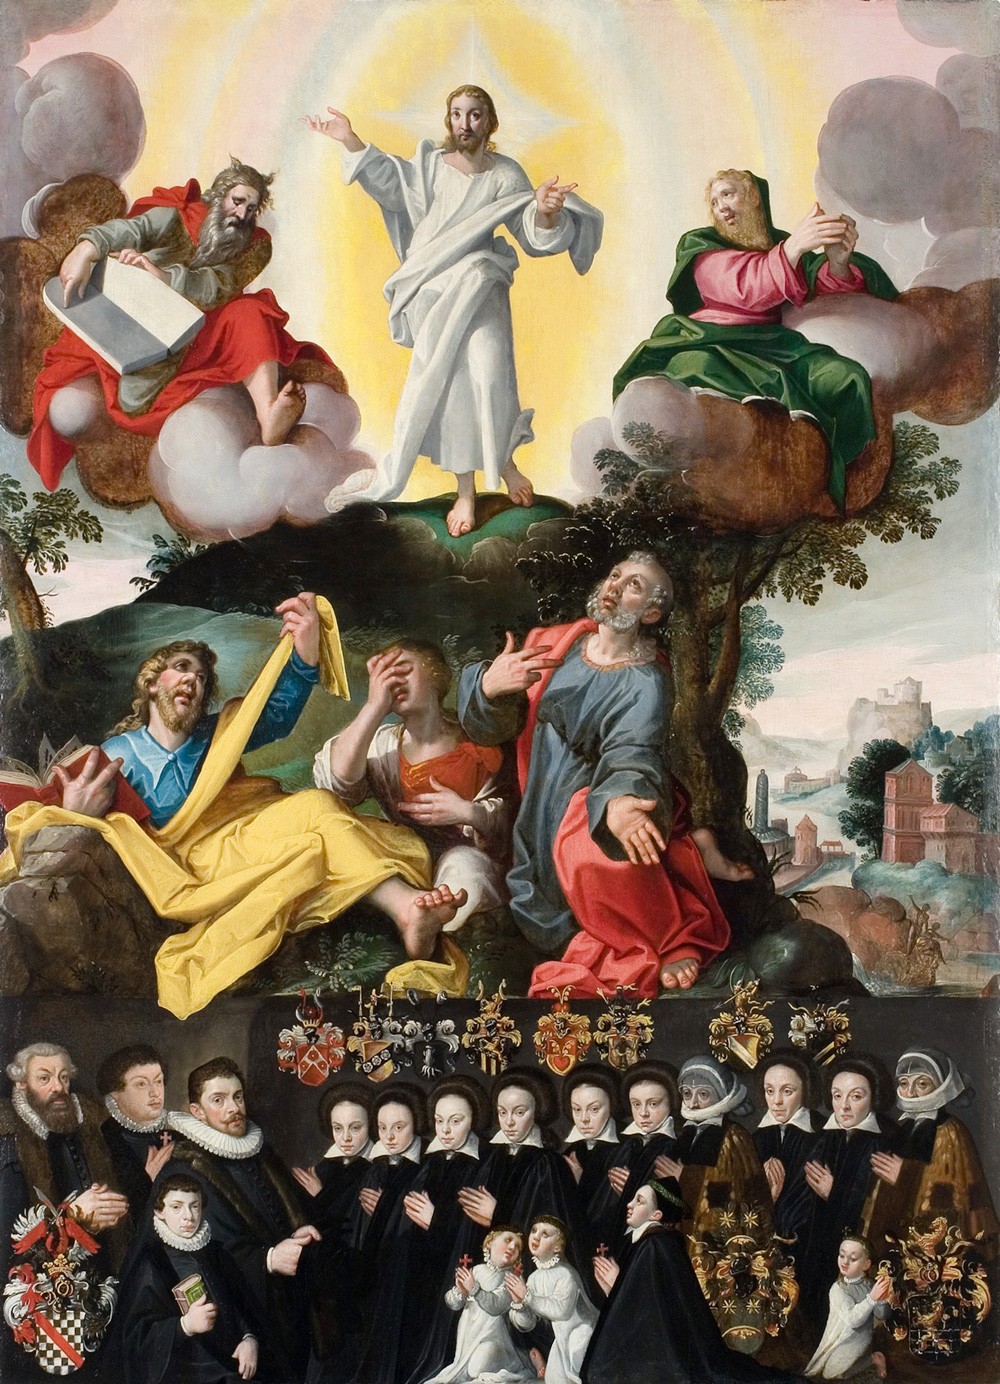 barwnie namalowane przedstawienie z Chrystusem w górnej części i modlącą się rodziną w dolnej części obrazu